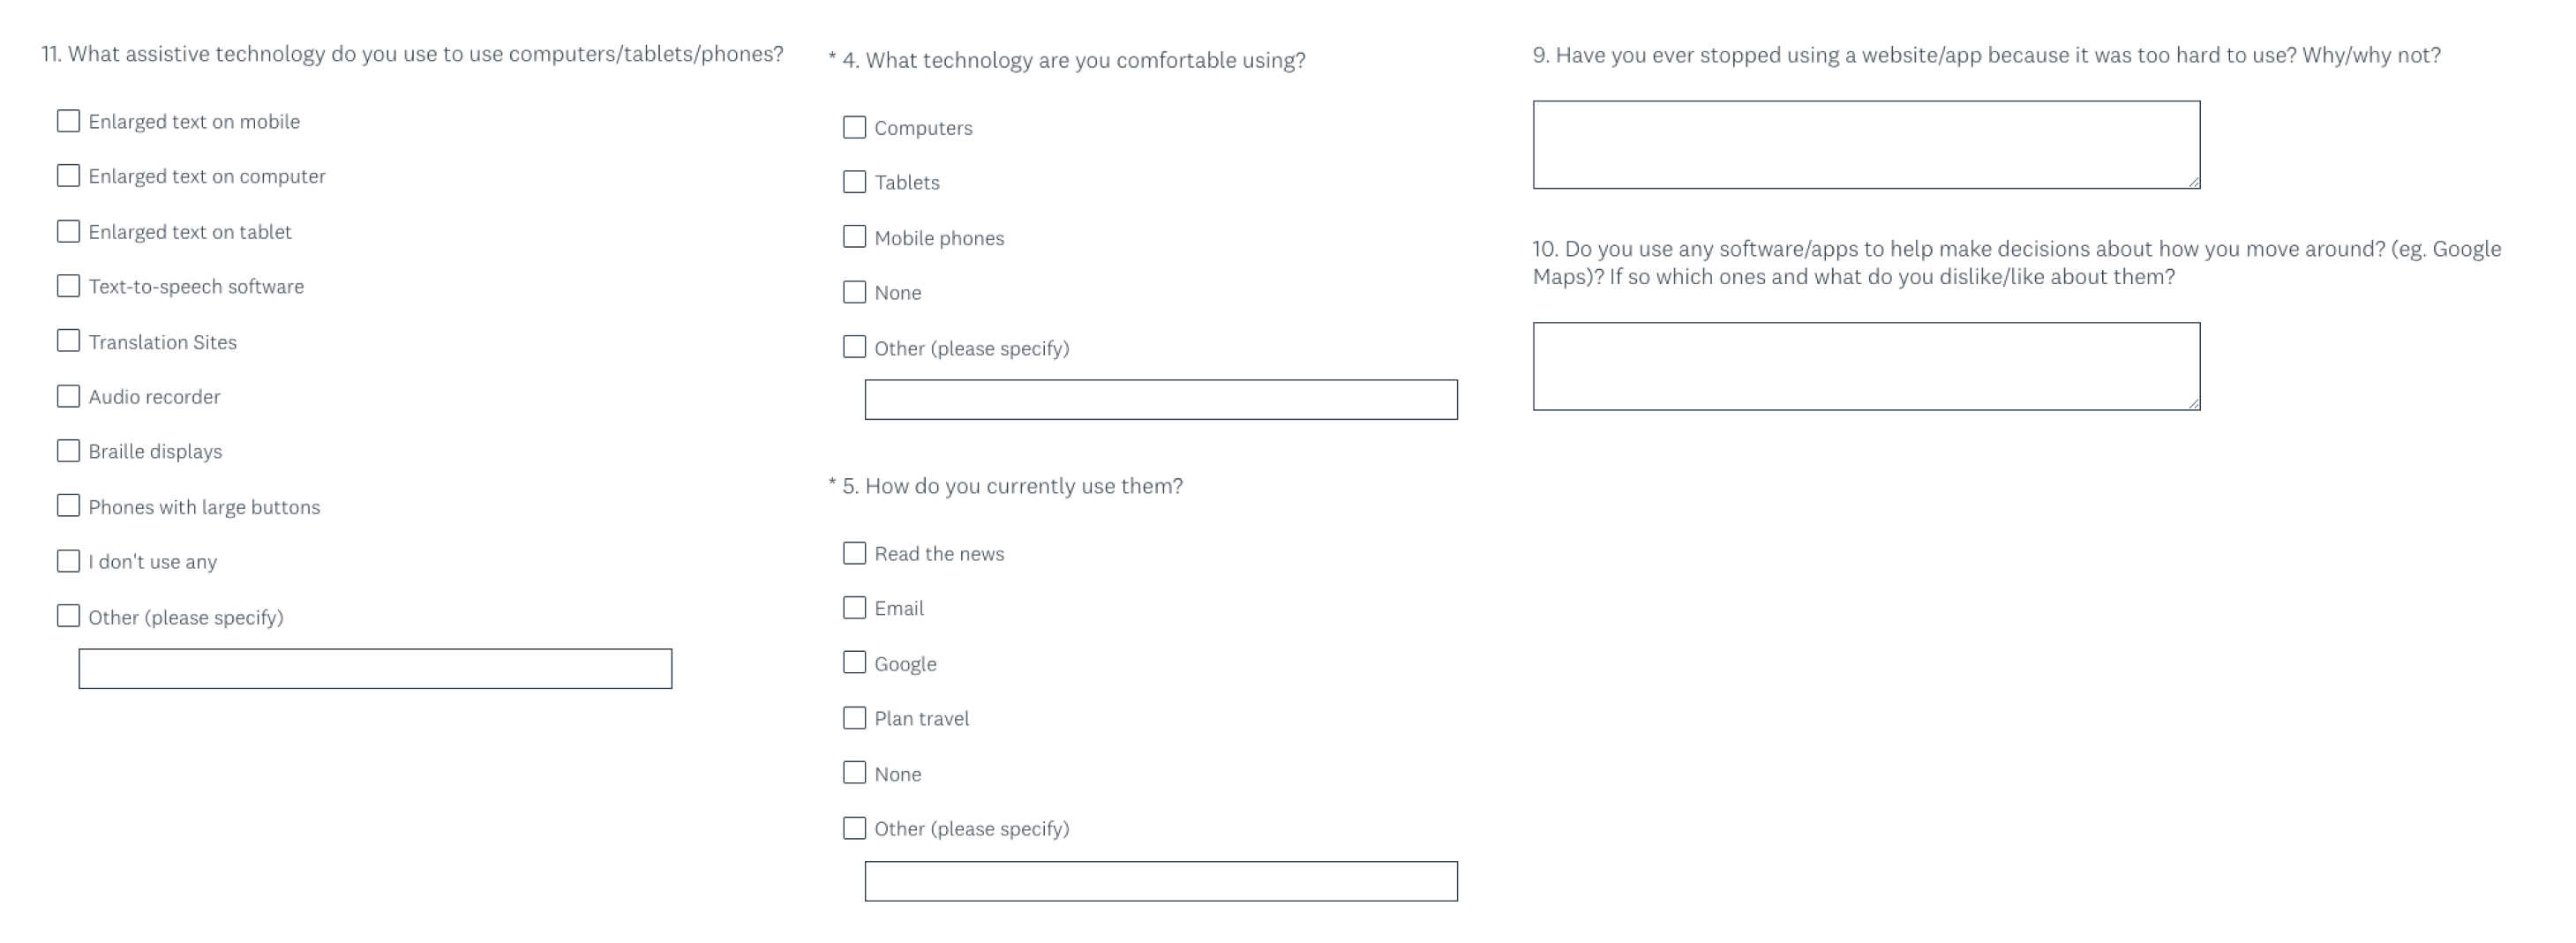 Survey Monkey survey